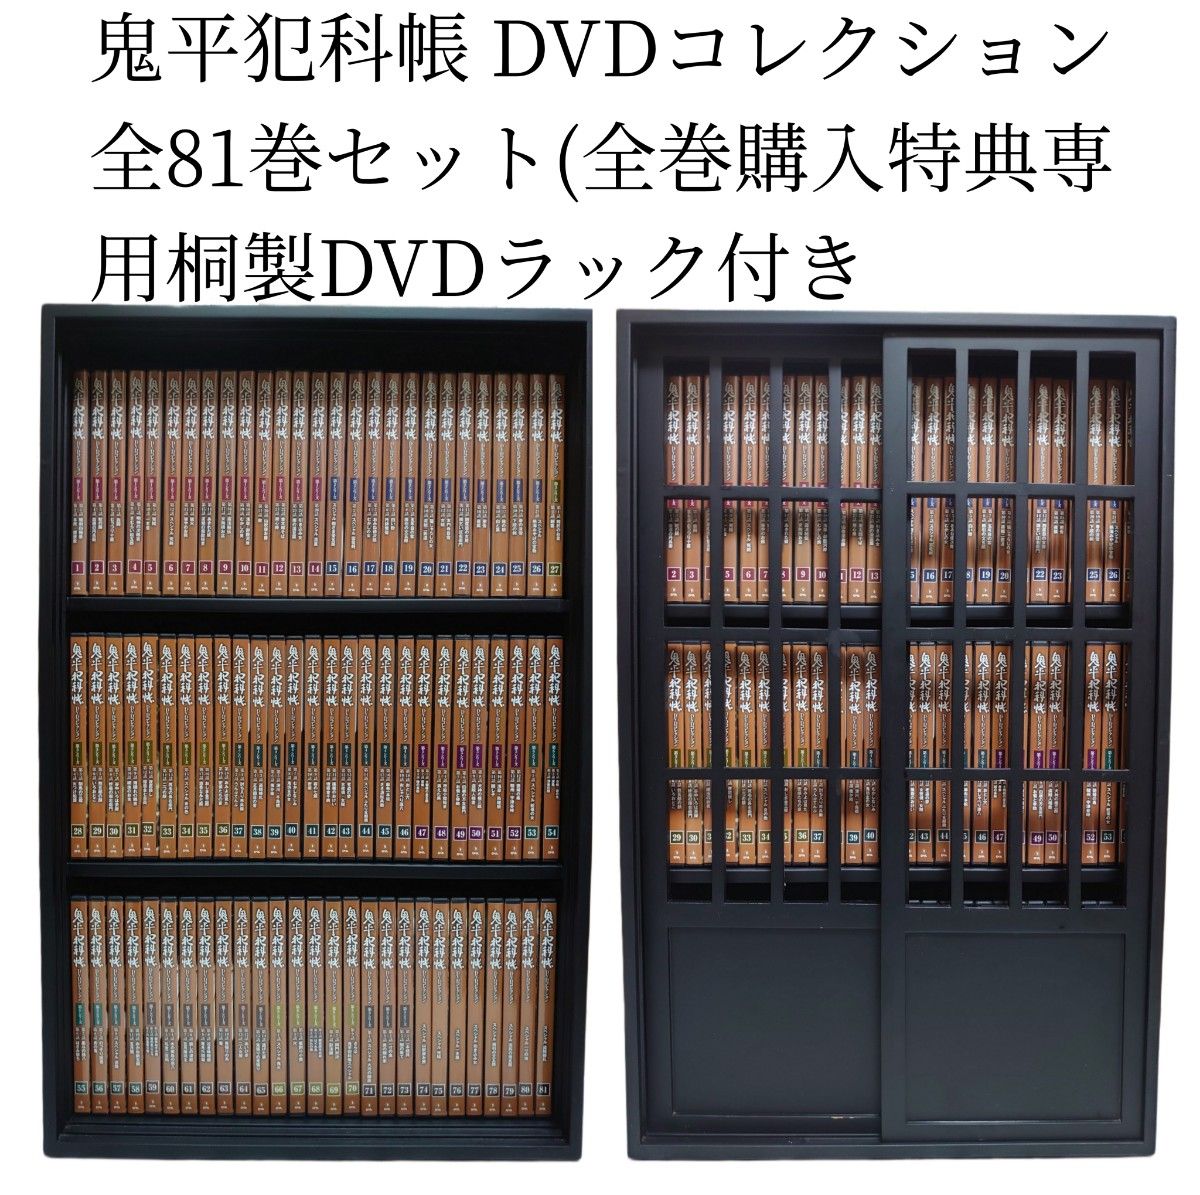 鬼平犯科帳DVDコレクション 全52巻セット-